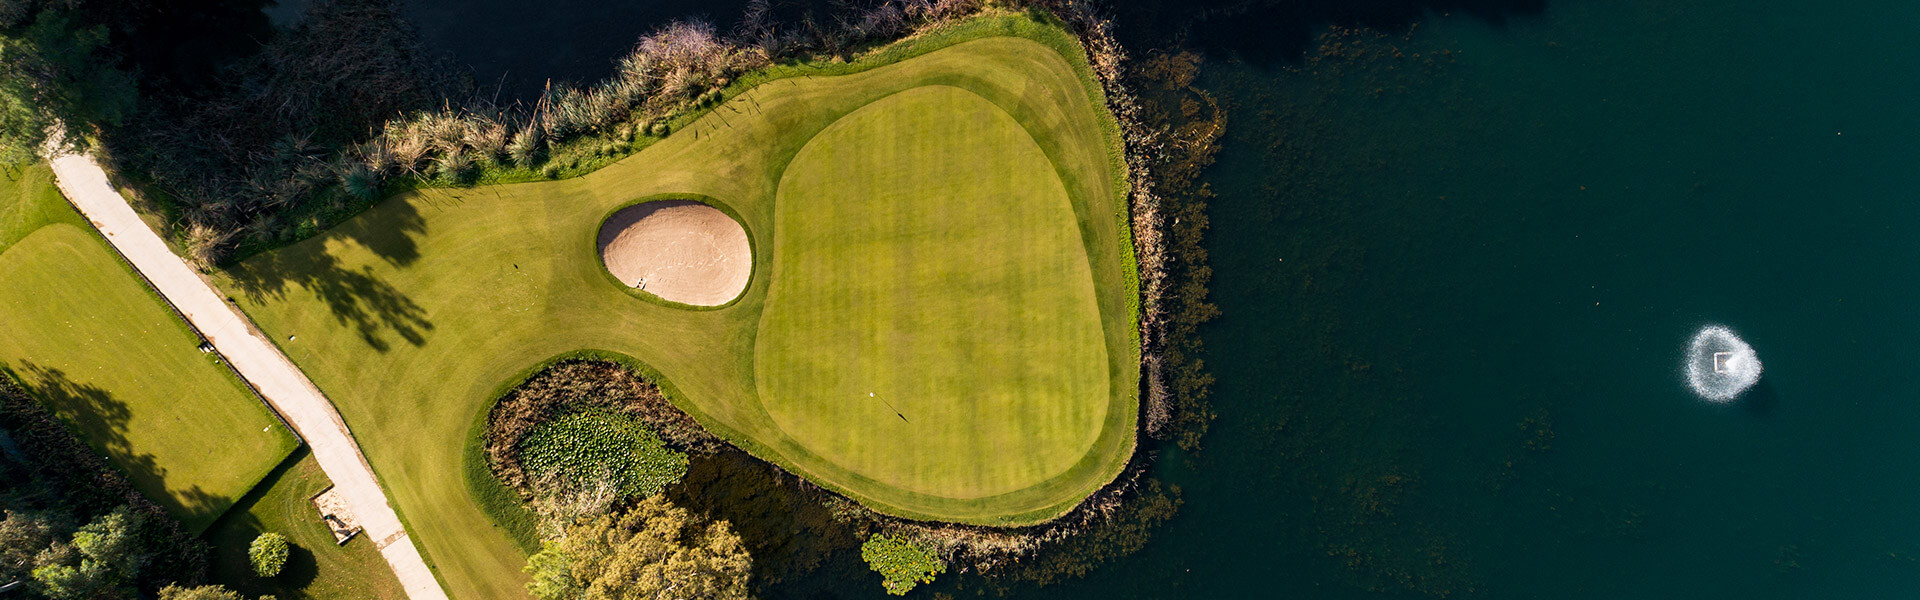 Bilyana Golf